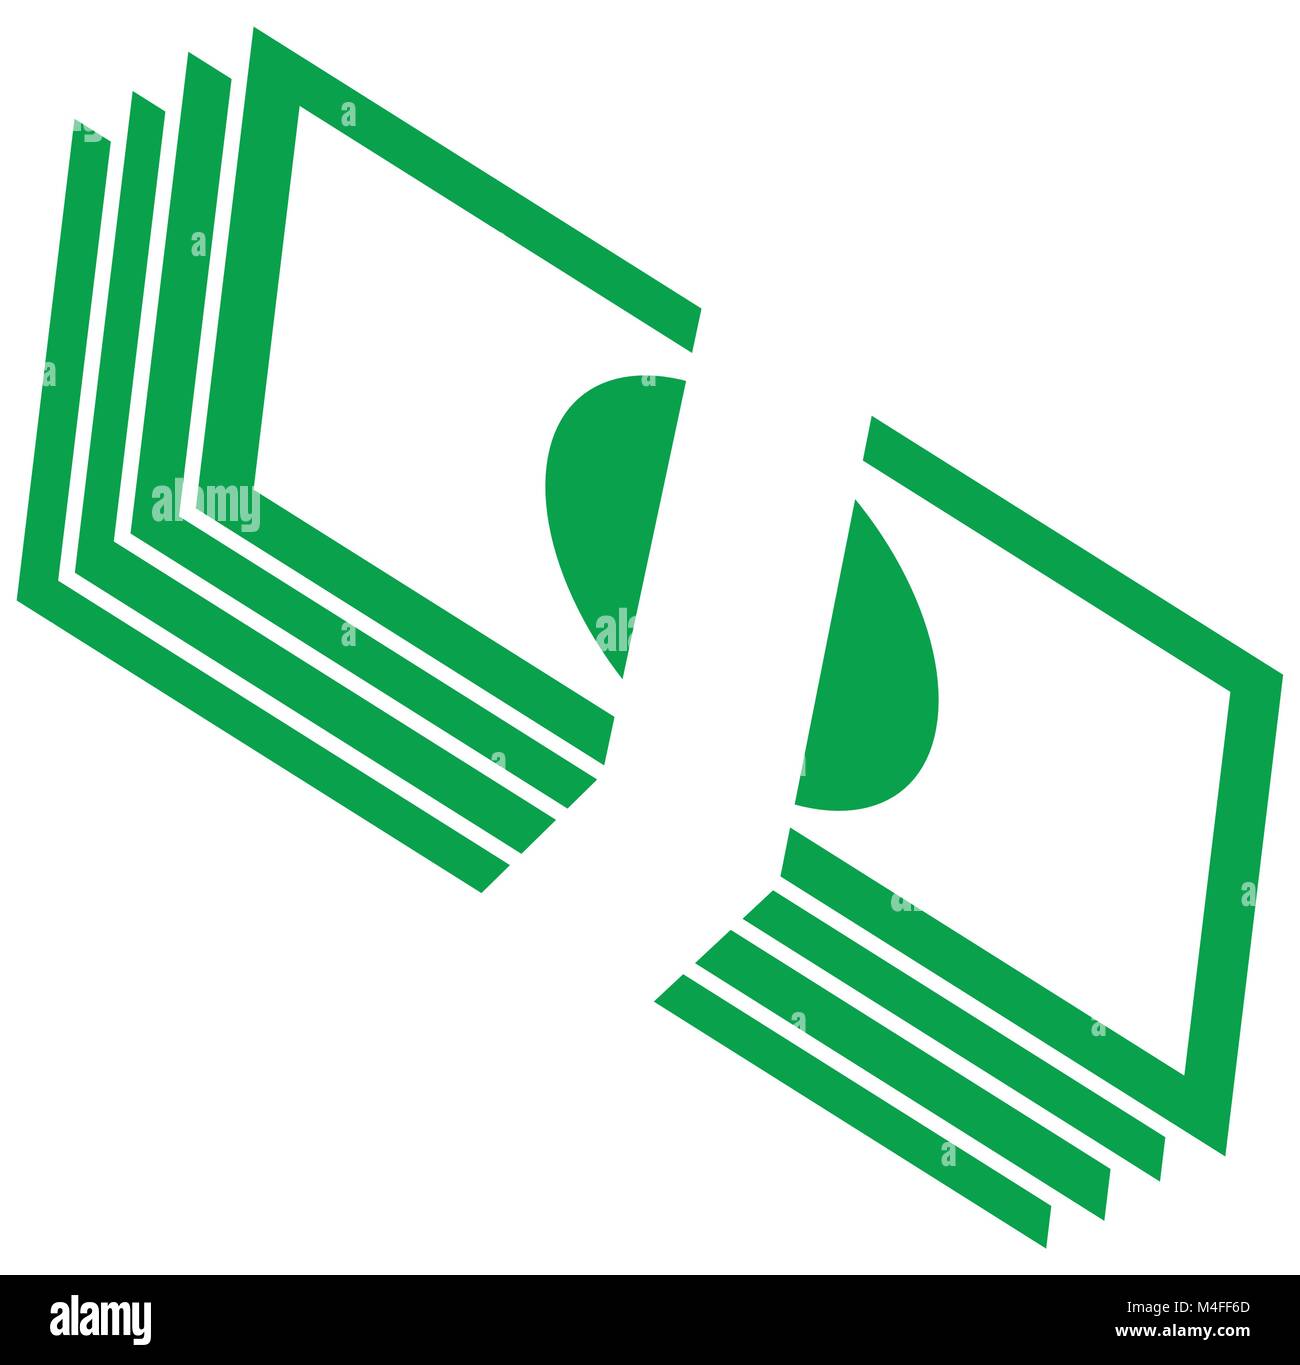 Stapel von Banknoten oder Rechnungen gestapelt. Währung Symbol oder Logo Vektor. Symbol für Banken oder Finanzen. Stock Vektor